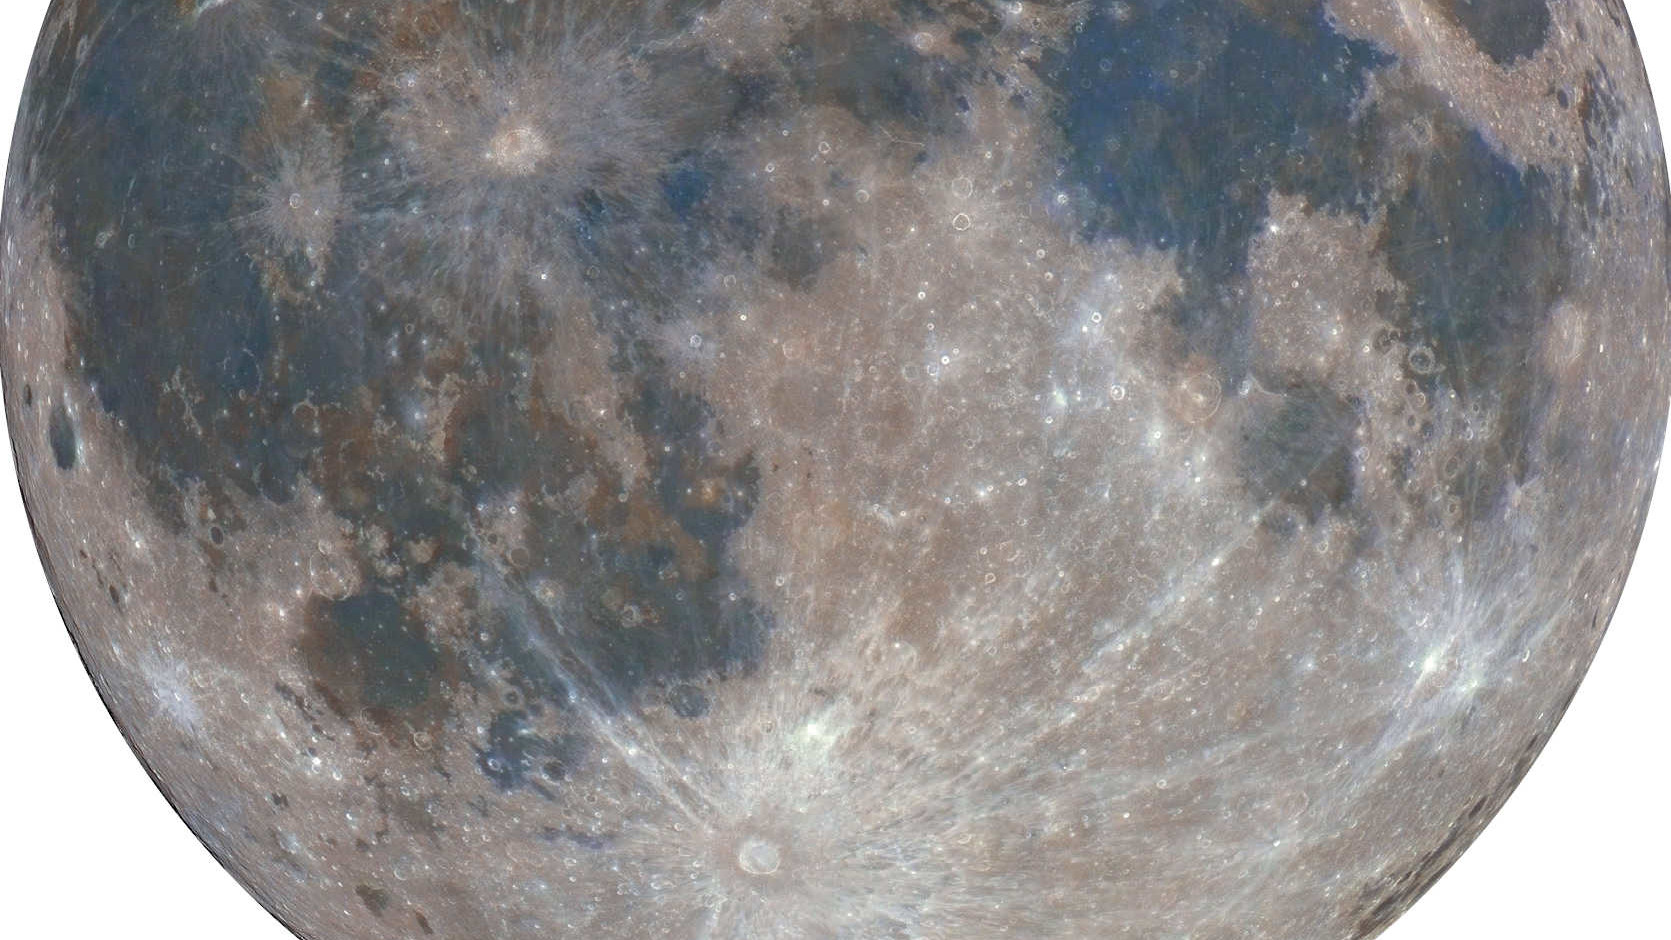 Tycho finns i månens södra del och Reiner Gamma nära den västra kanten.
Mario Weigand